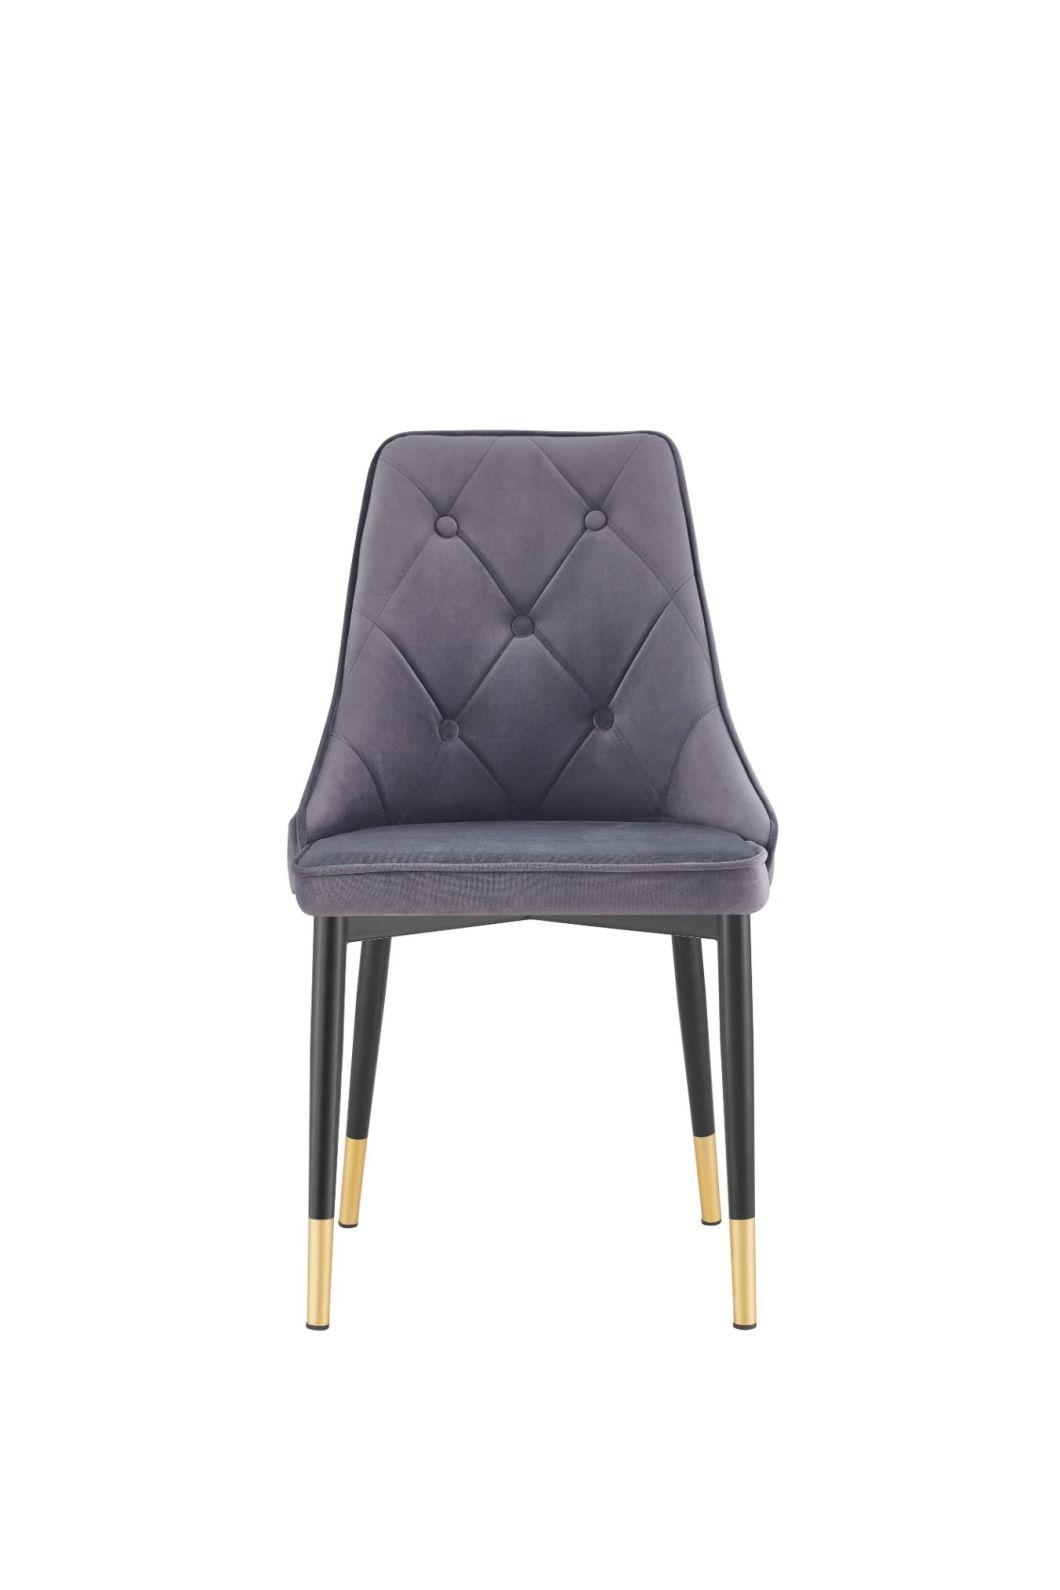 China Wholesale Modern Home Furniture Restaurant Velvet Upholstered Dining Chairs for UK Market